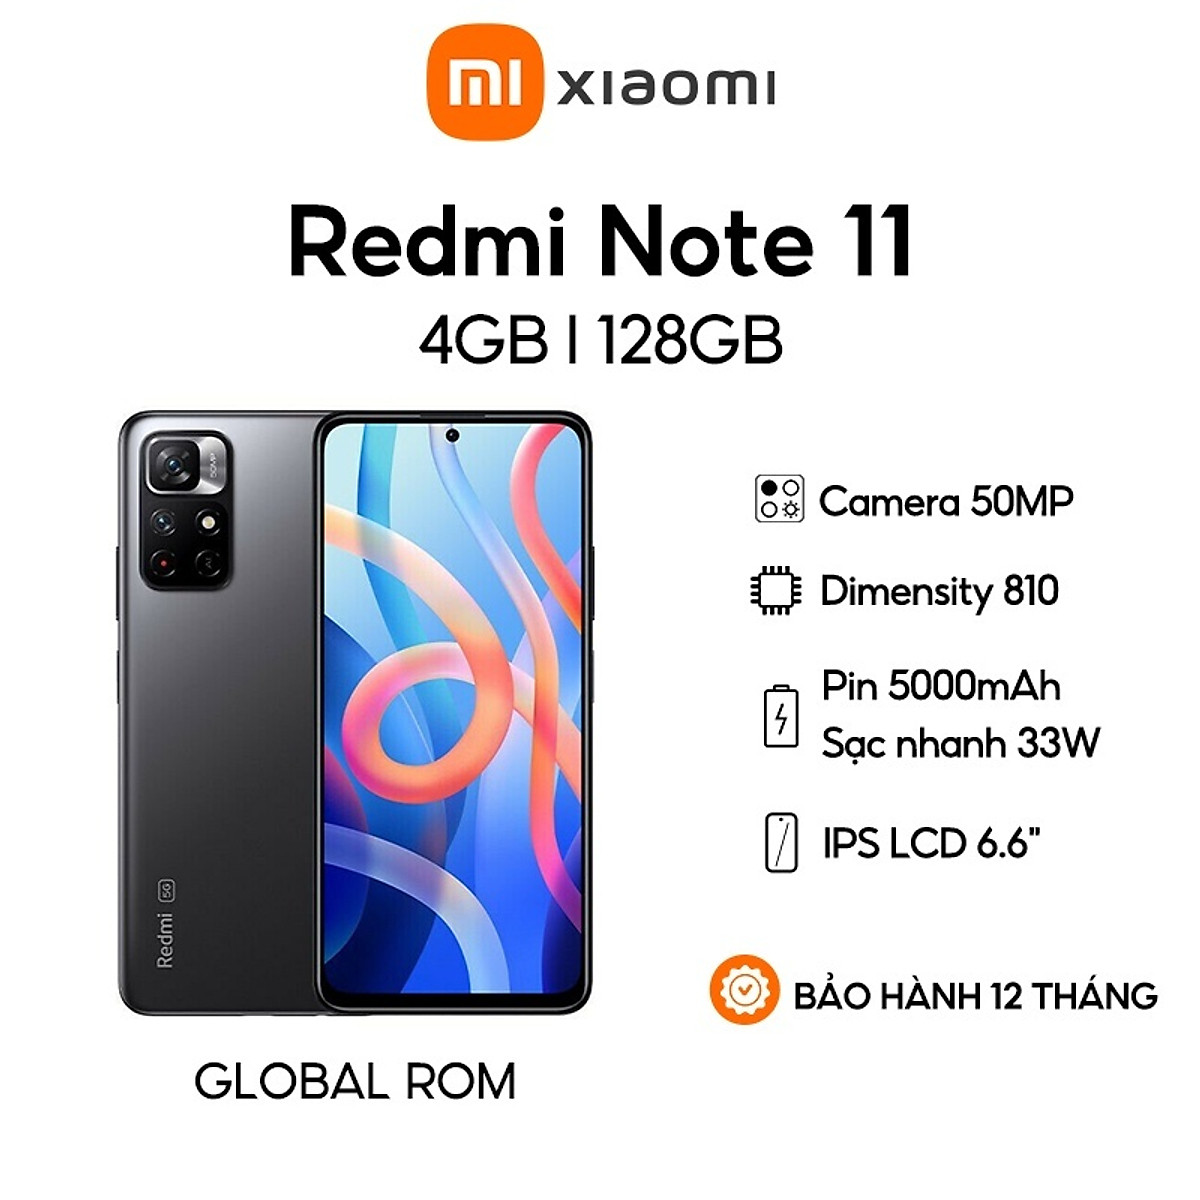 Điện thoại Xiaomi Redmi Note 11: Sự kết hợp hoàn hảo giữa chất lượng, tính năng và giá cả, Xiaomi Redmi Note 11 là một trong những điện thoại hàng đầu hiện nay. Được thiết kế với những tính năng tiên tiến, màn hình lớn, camera đỉnh cao, bạn sẽ không thể cưỡng lại được sự hấp dẫn của sản phẩm này. Hãy khám phá bức ảnh đẹp nhất với Xiaomi Redmi Note 11!